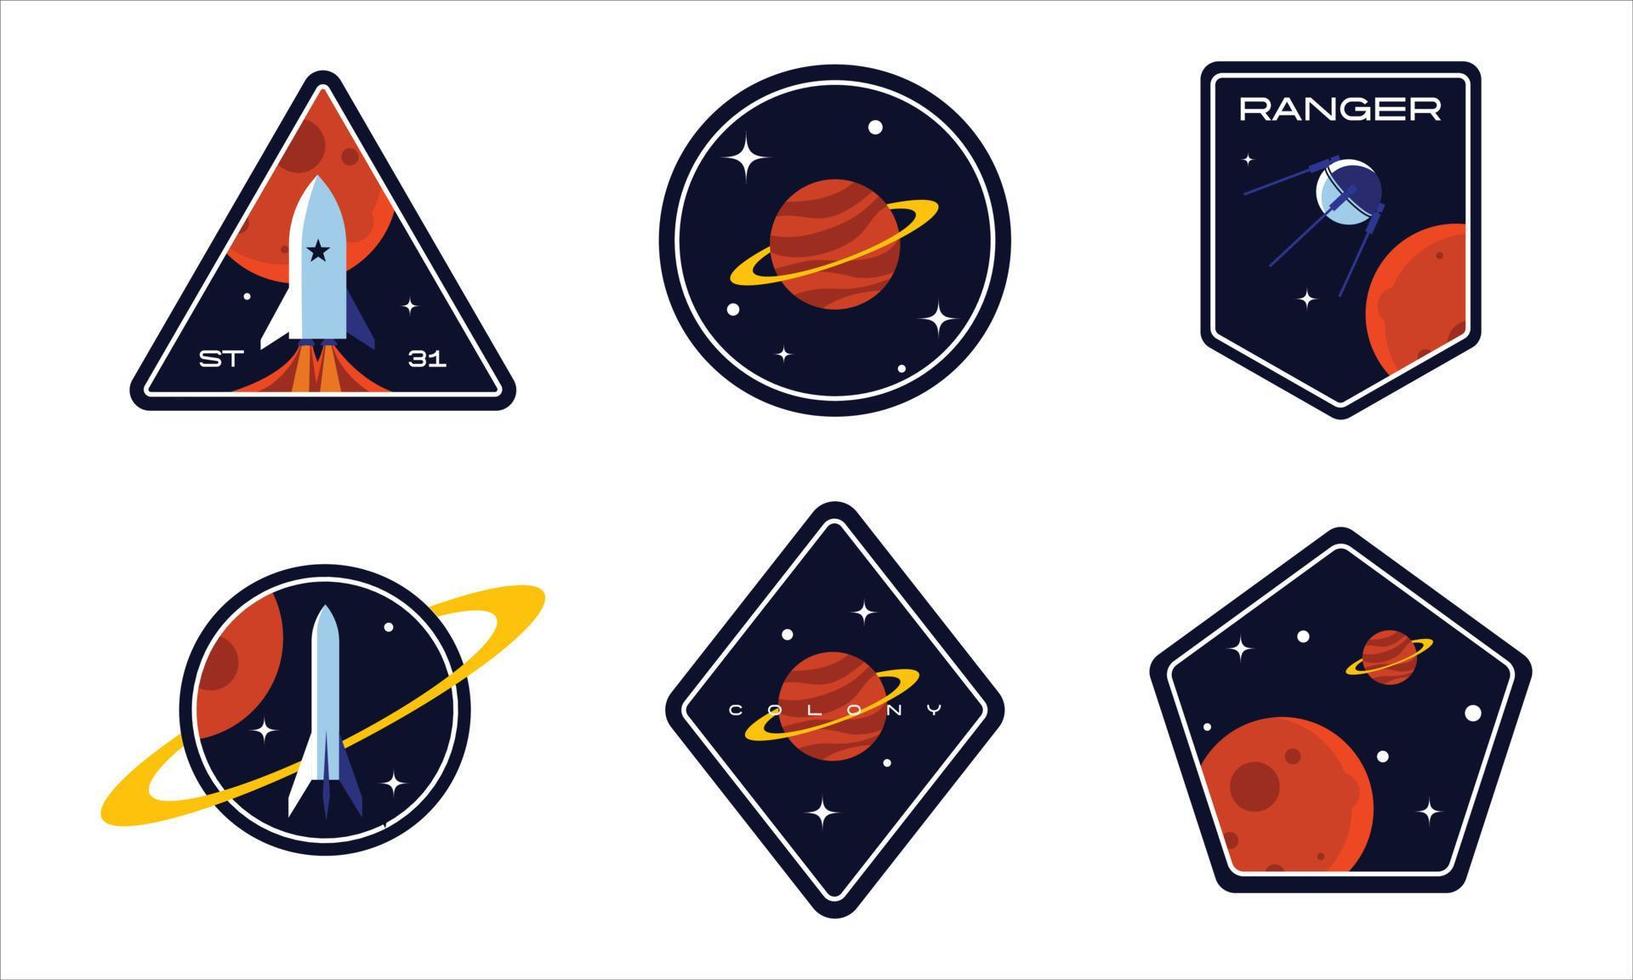 conjunto de insignias espaciales, parches, emblemas, insignias y etiquetas. exploración de galaxias y diseño de vectores de misiones de astronautas.